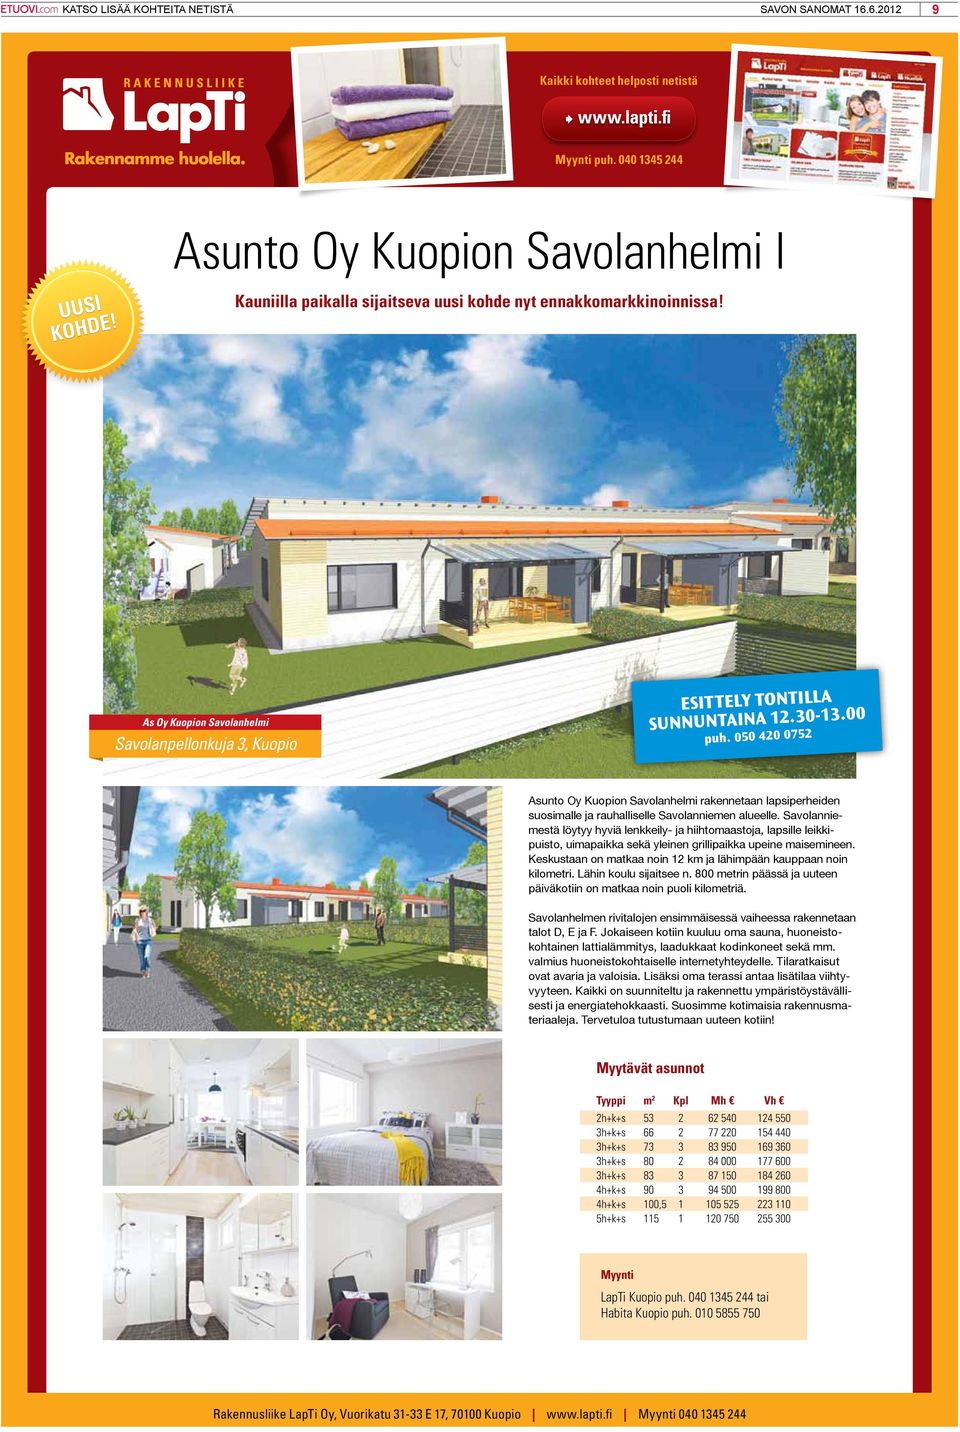 050 420 0752 Asunto Oy Kuopion Savolanhelmi rakennetaan lapsiperheiden suosimalle ja rauhalliselle Savolanniemen alueelle.